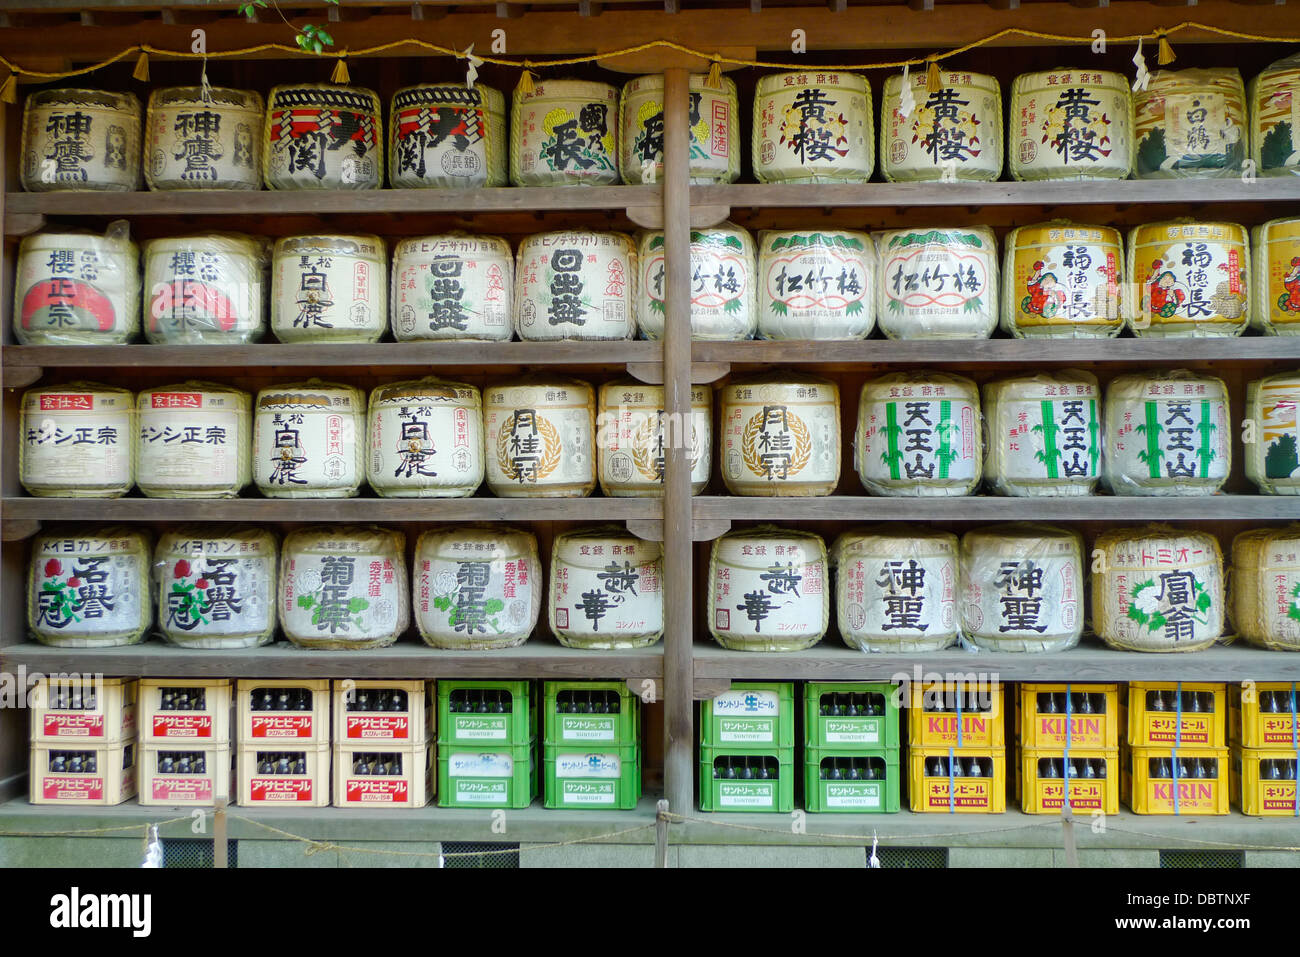 Motivi di barili (kazaridaru) presso un santuario in Giappone. Foto Stock